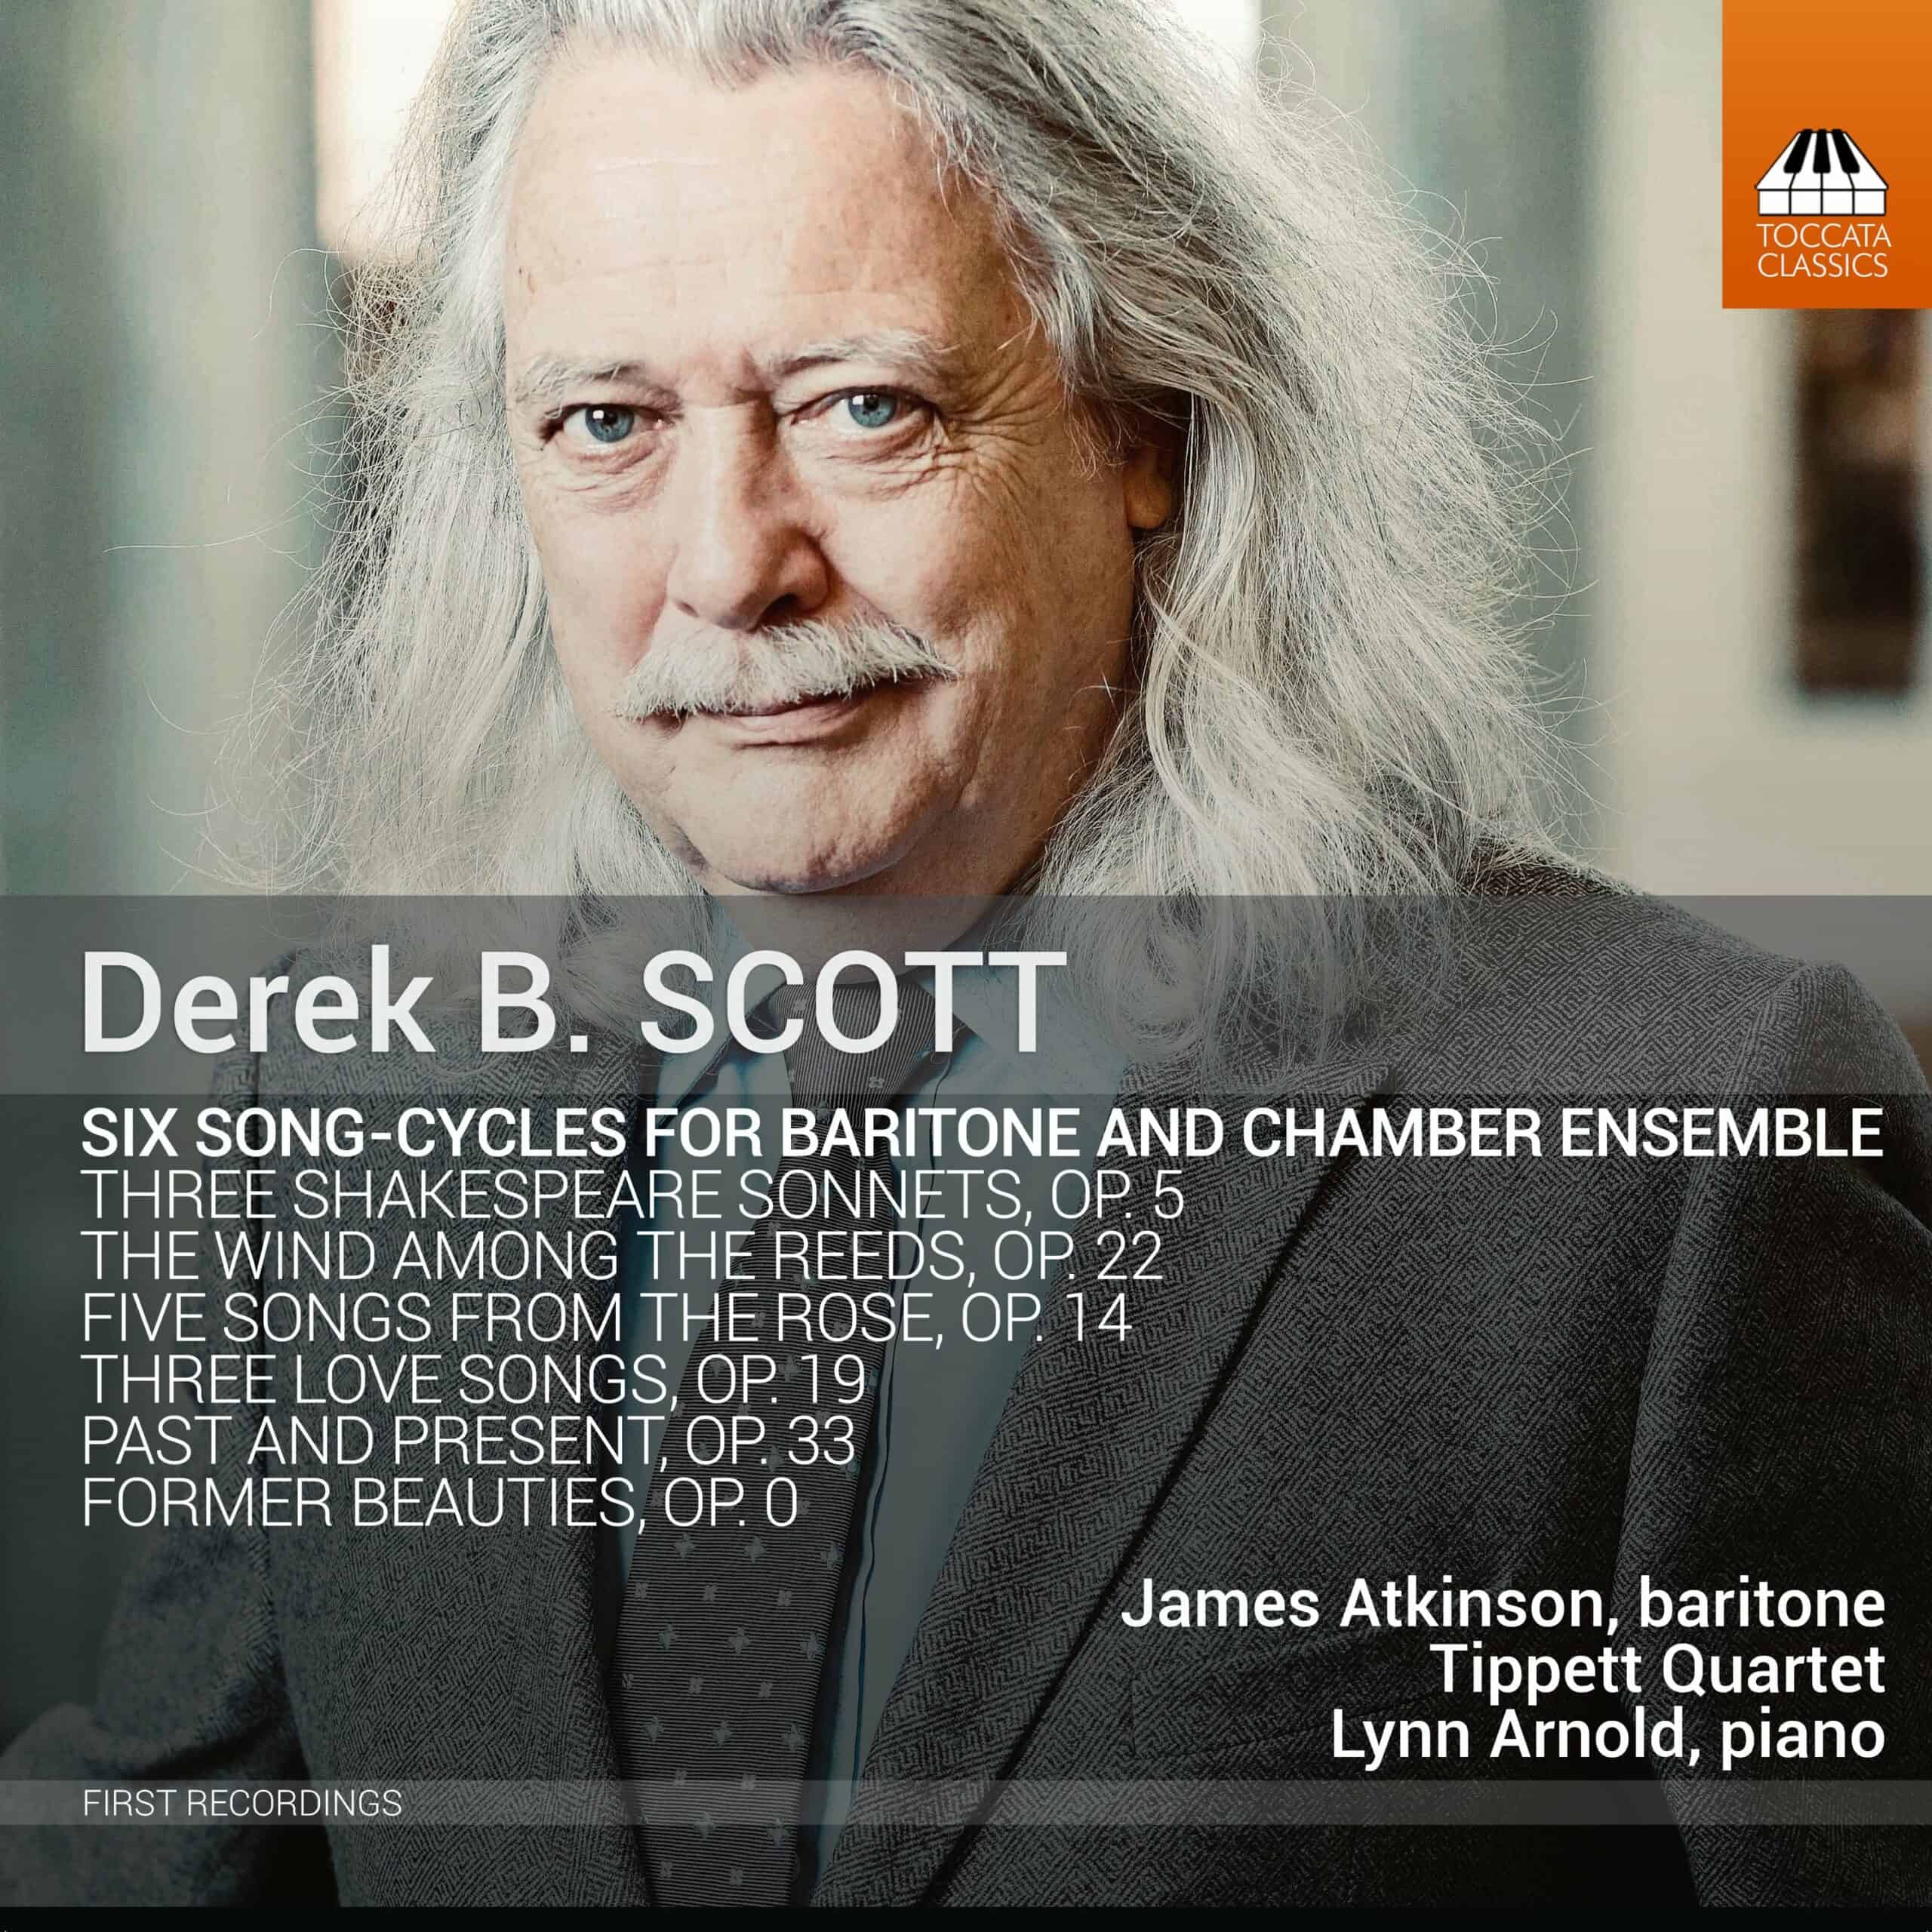 Derek B. Scott: Song-Cycles